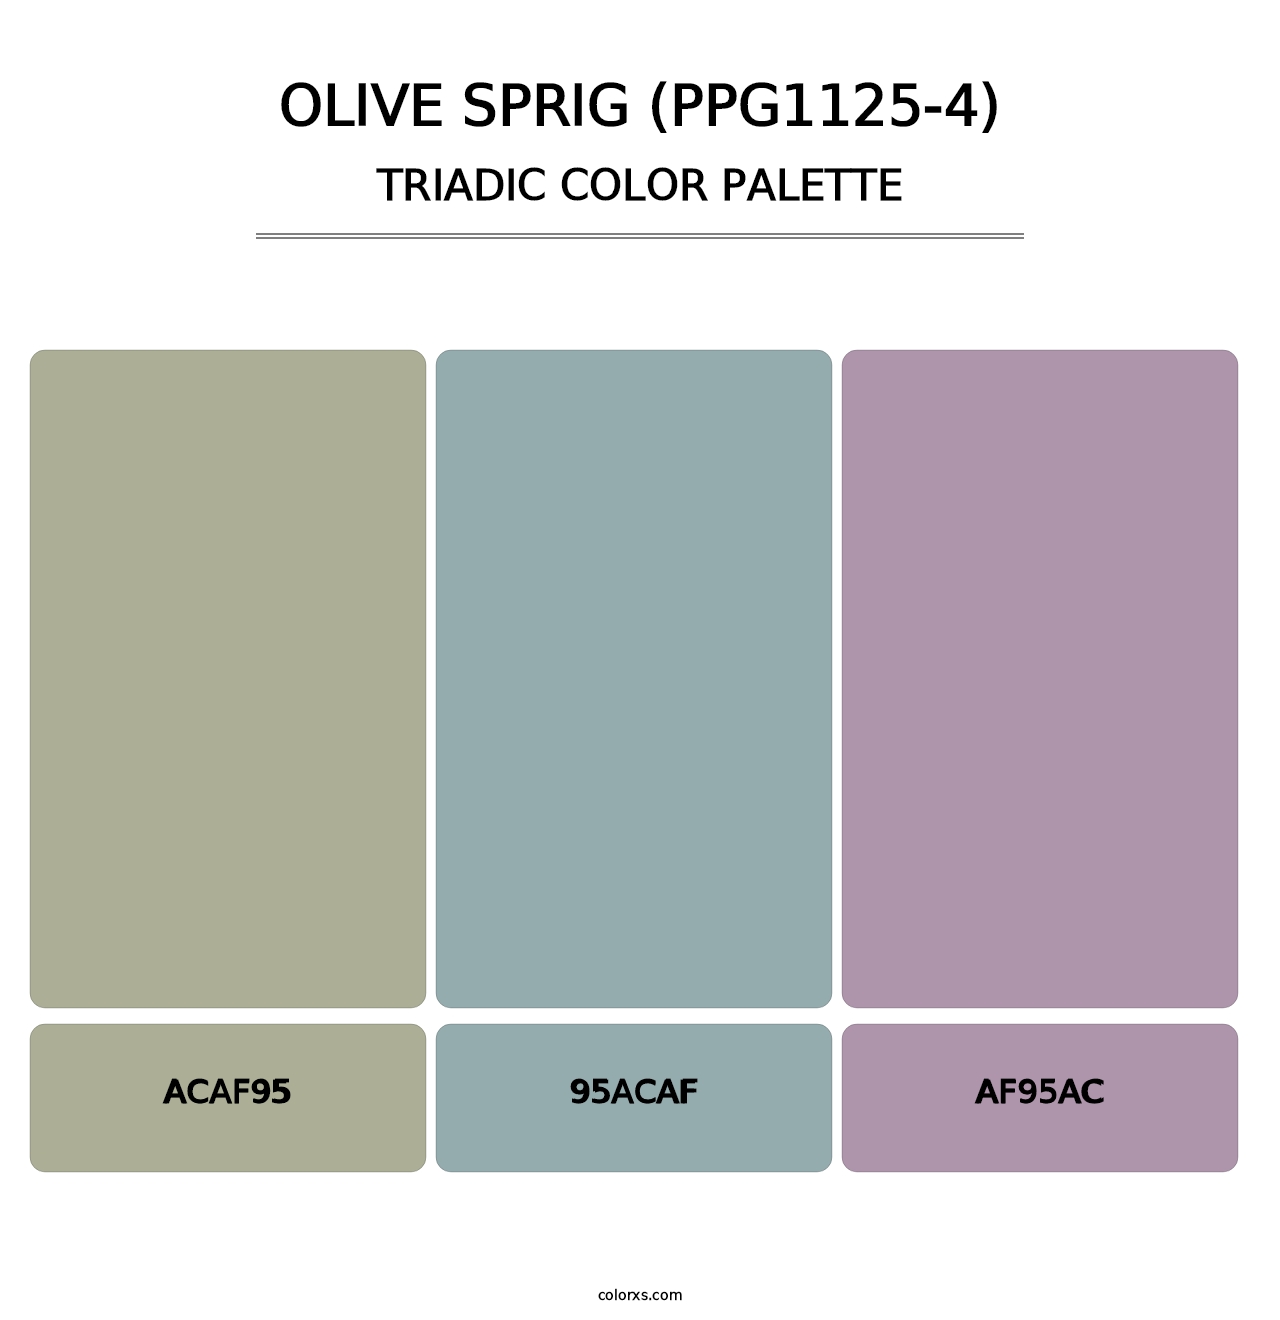 Olive Sprig (PPG1125-4) - Triadic Color Palette